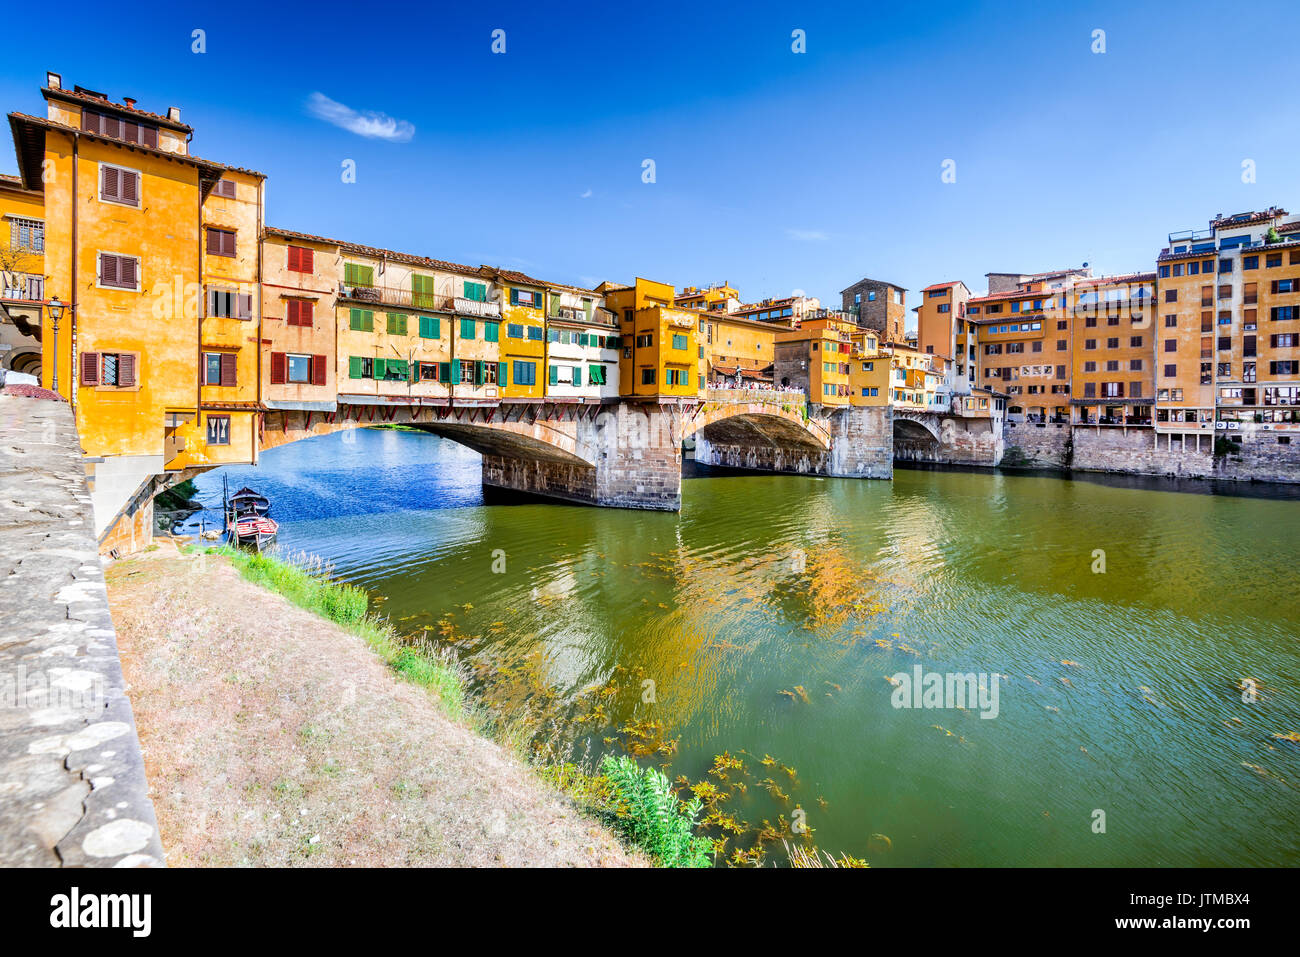 Florence, Toscane - le Ponte Vecchio, pont médiéval sunlighted sur l'Arno, Italie. Banque D'Images